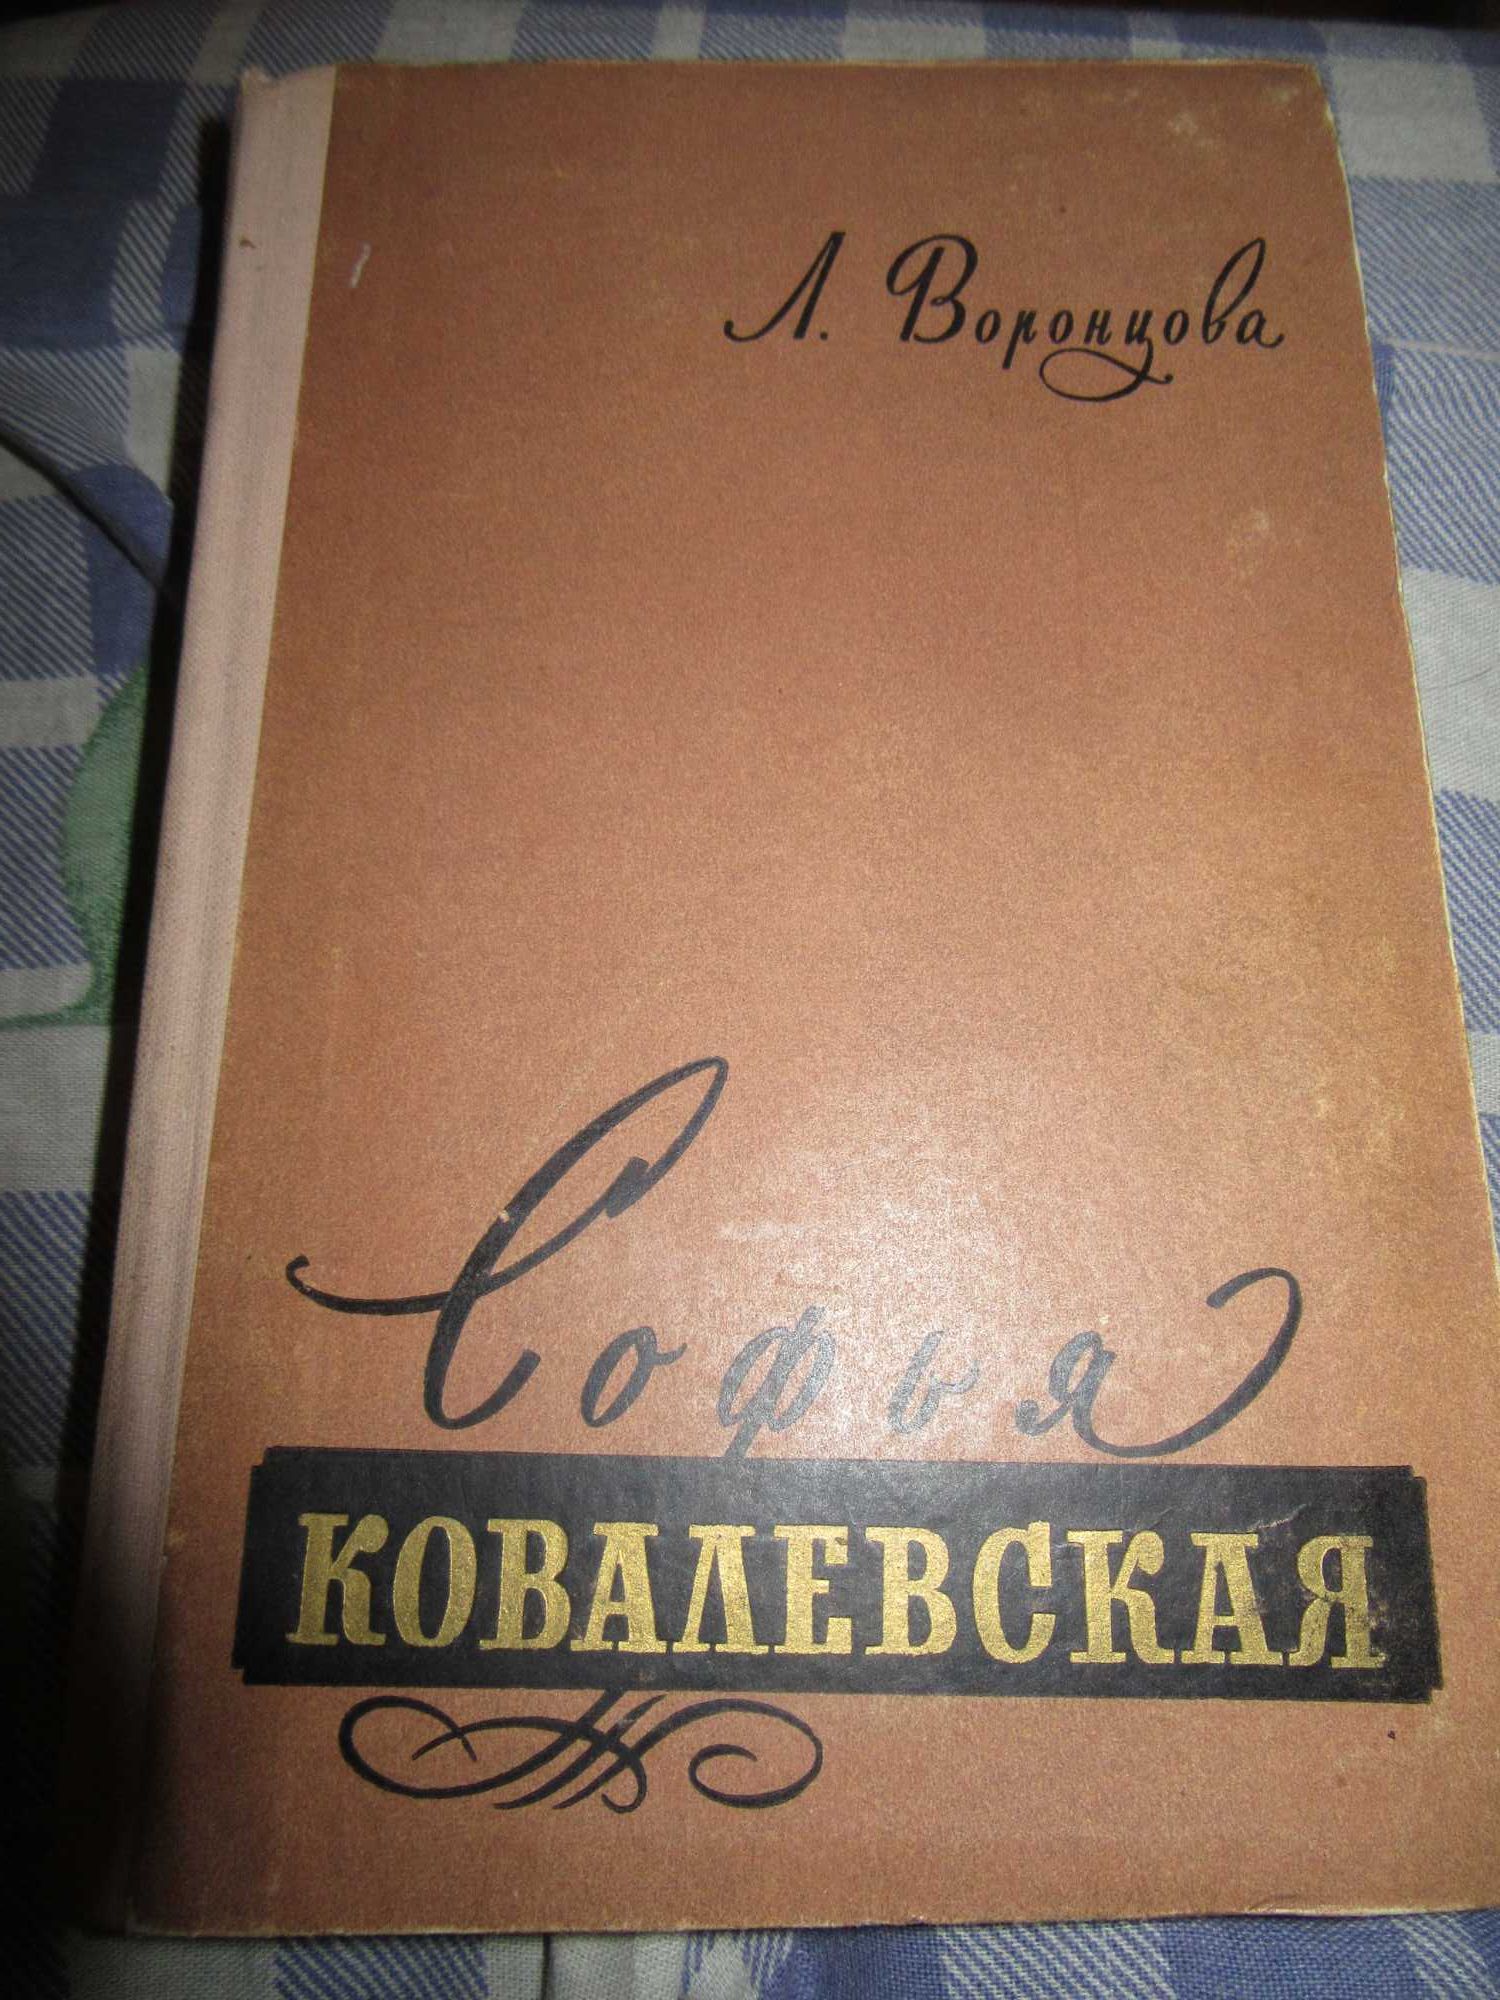 Софья Ковалевская. Воронцова Любовь Андреевна. ЖЗЛ.1957 г.